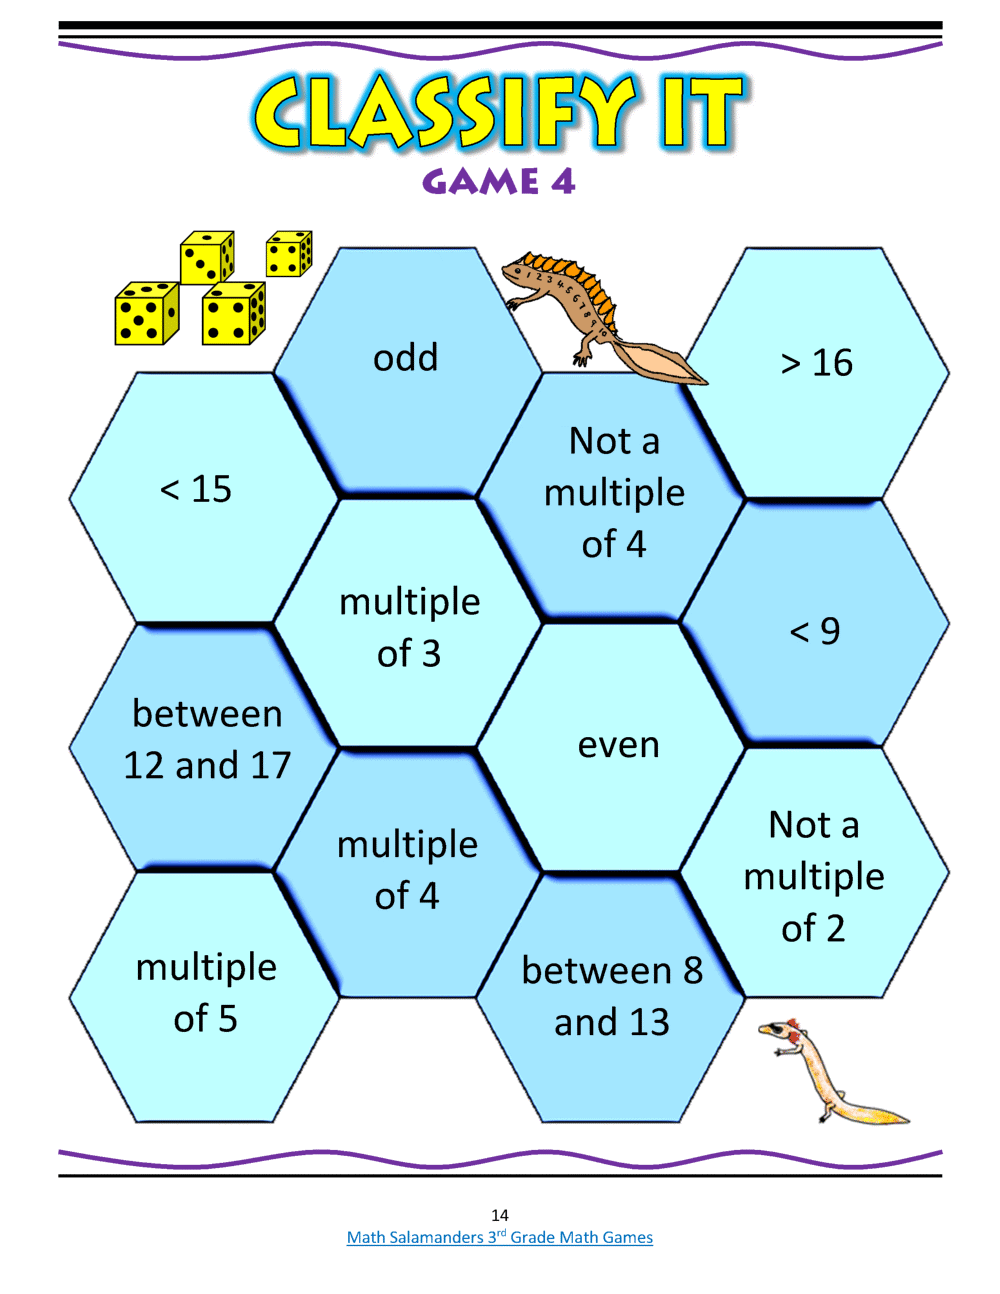 Third Grade Math Games